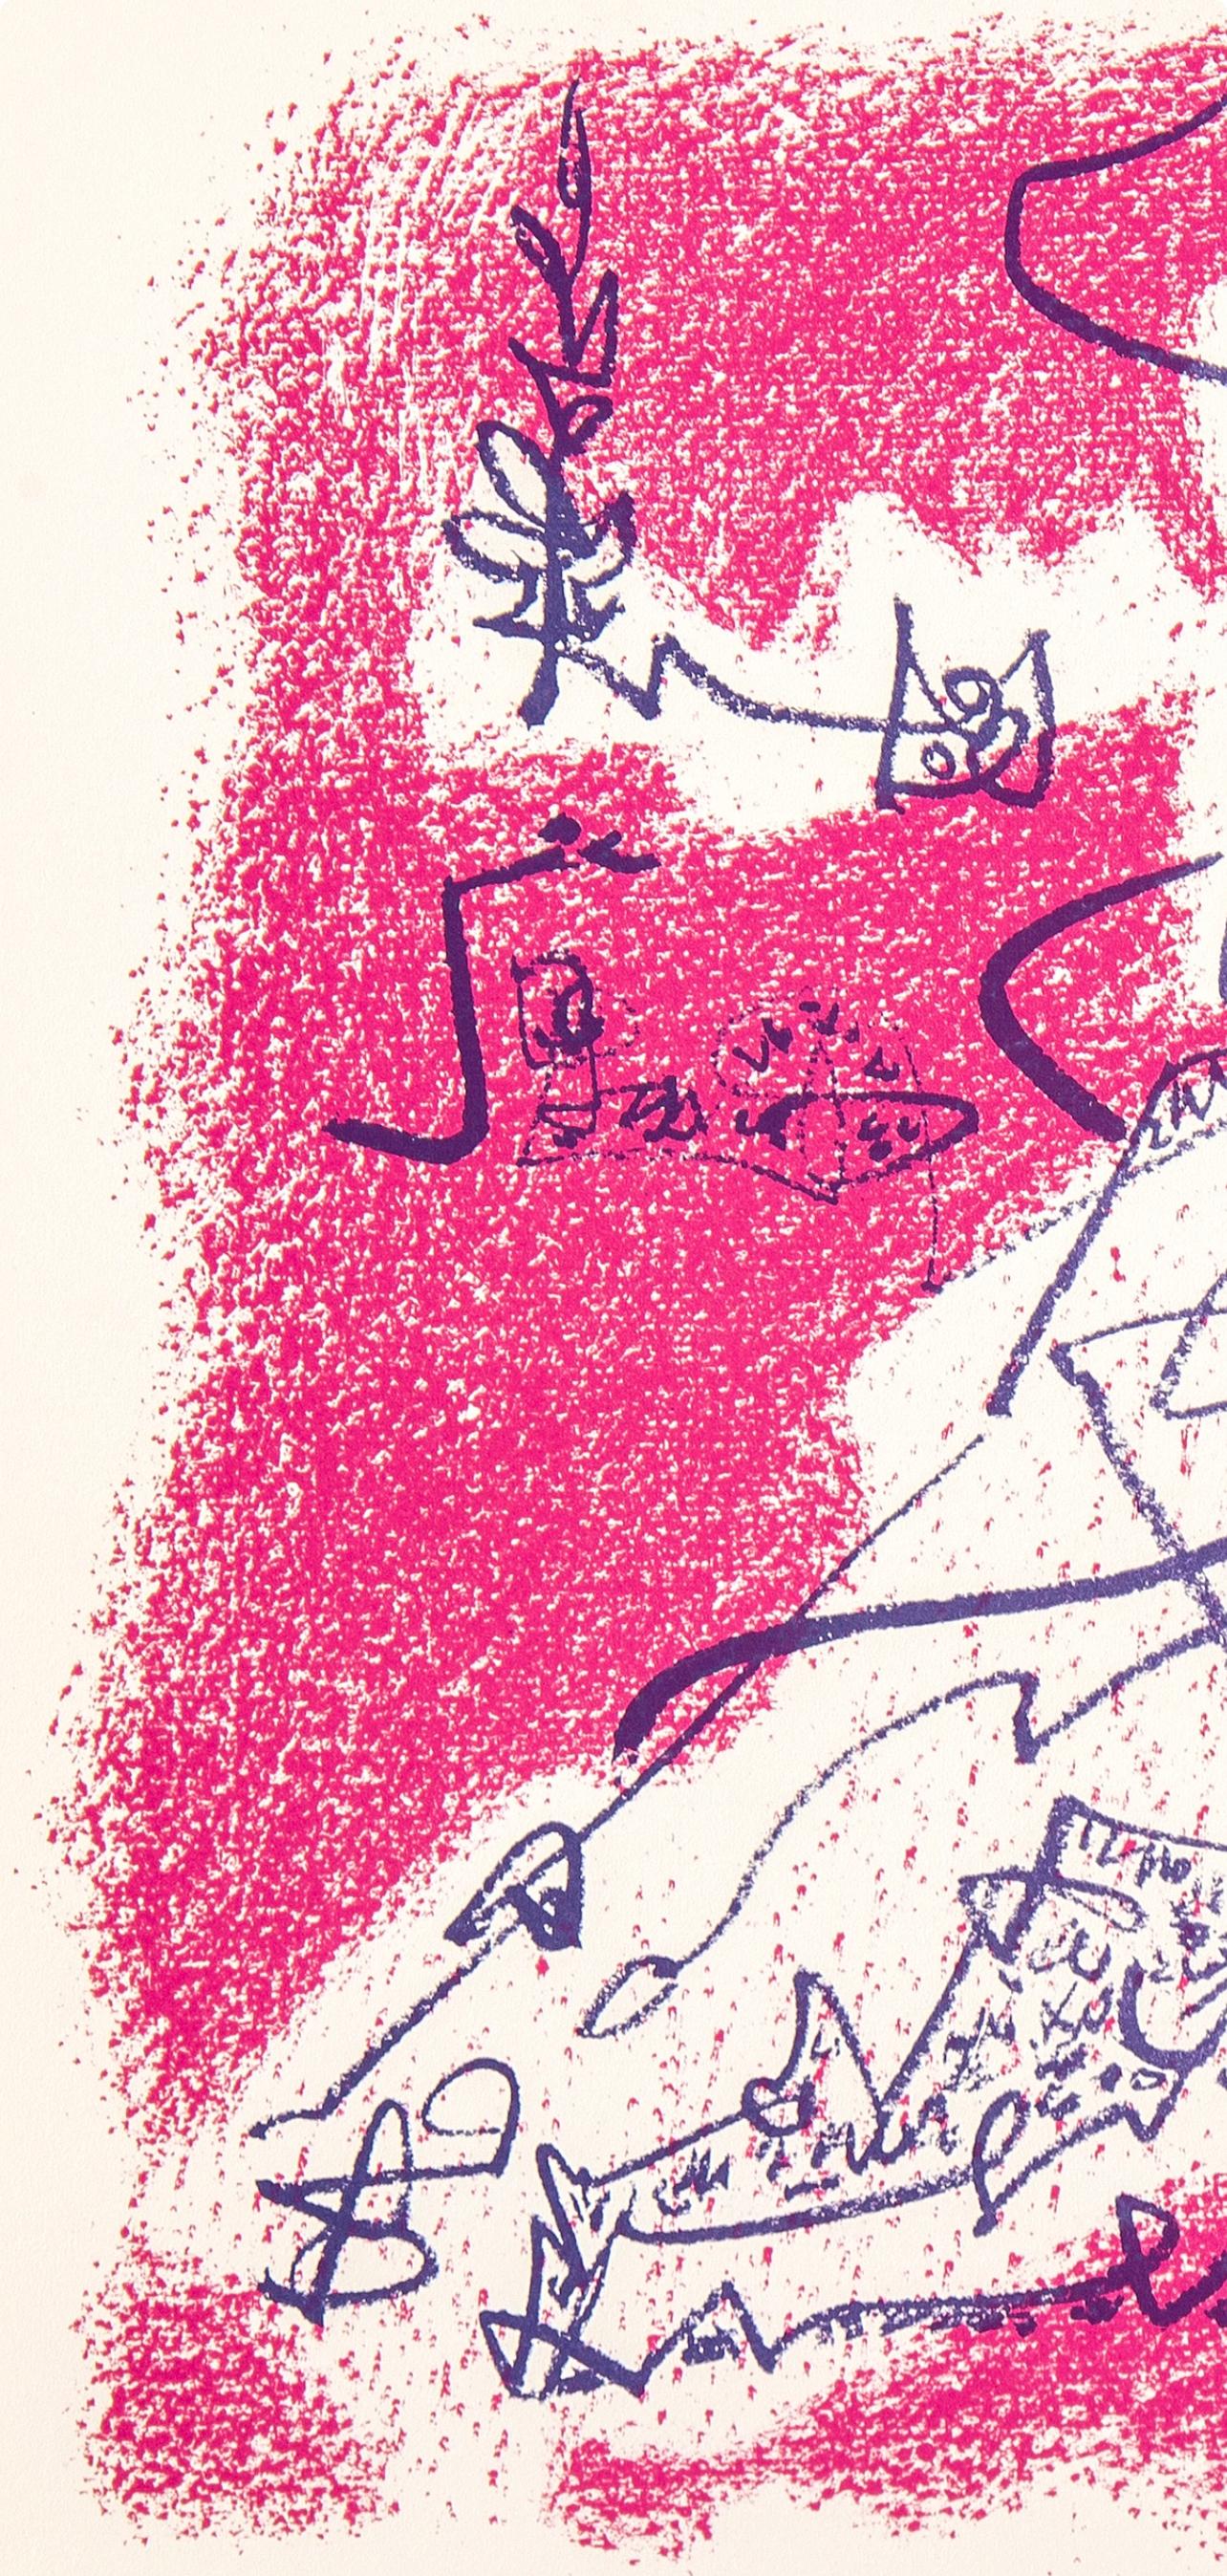 Lithograph on vélin d'Arches paper. Unsigned and unnumbered, as issued. Good condition. Notes: From the folio, Souvenirs et portraits d'artistes, 1972. Published by Fernand Mourlot, Éditeur, Paris, Alain A.C. Mazo, Éditeur, Paris, Leon Amiel,